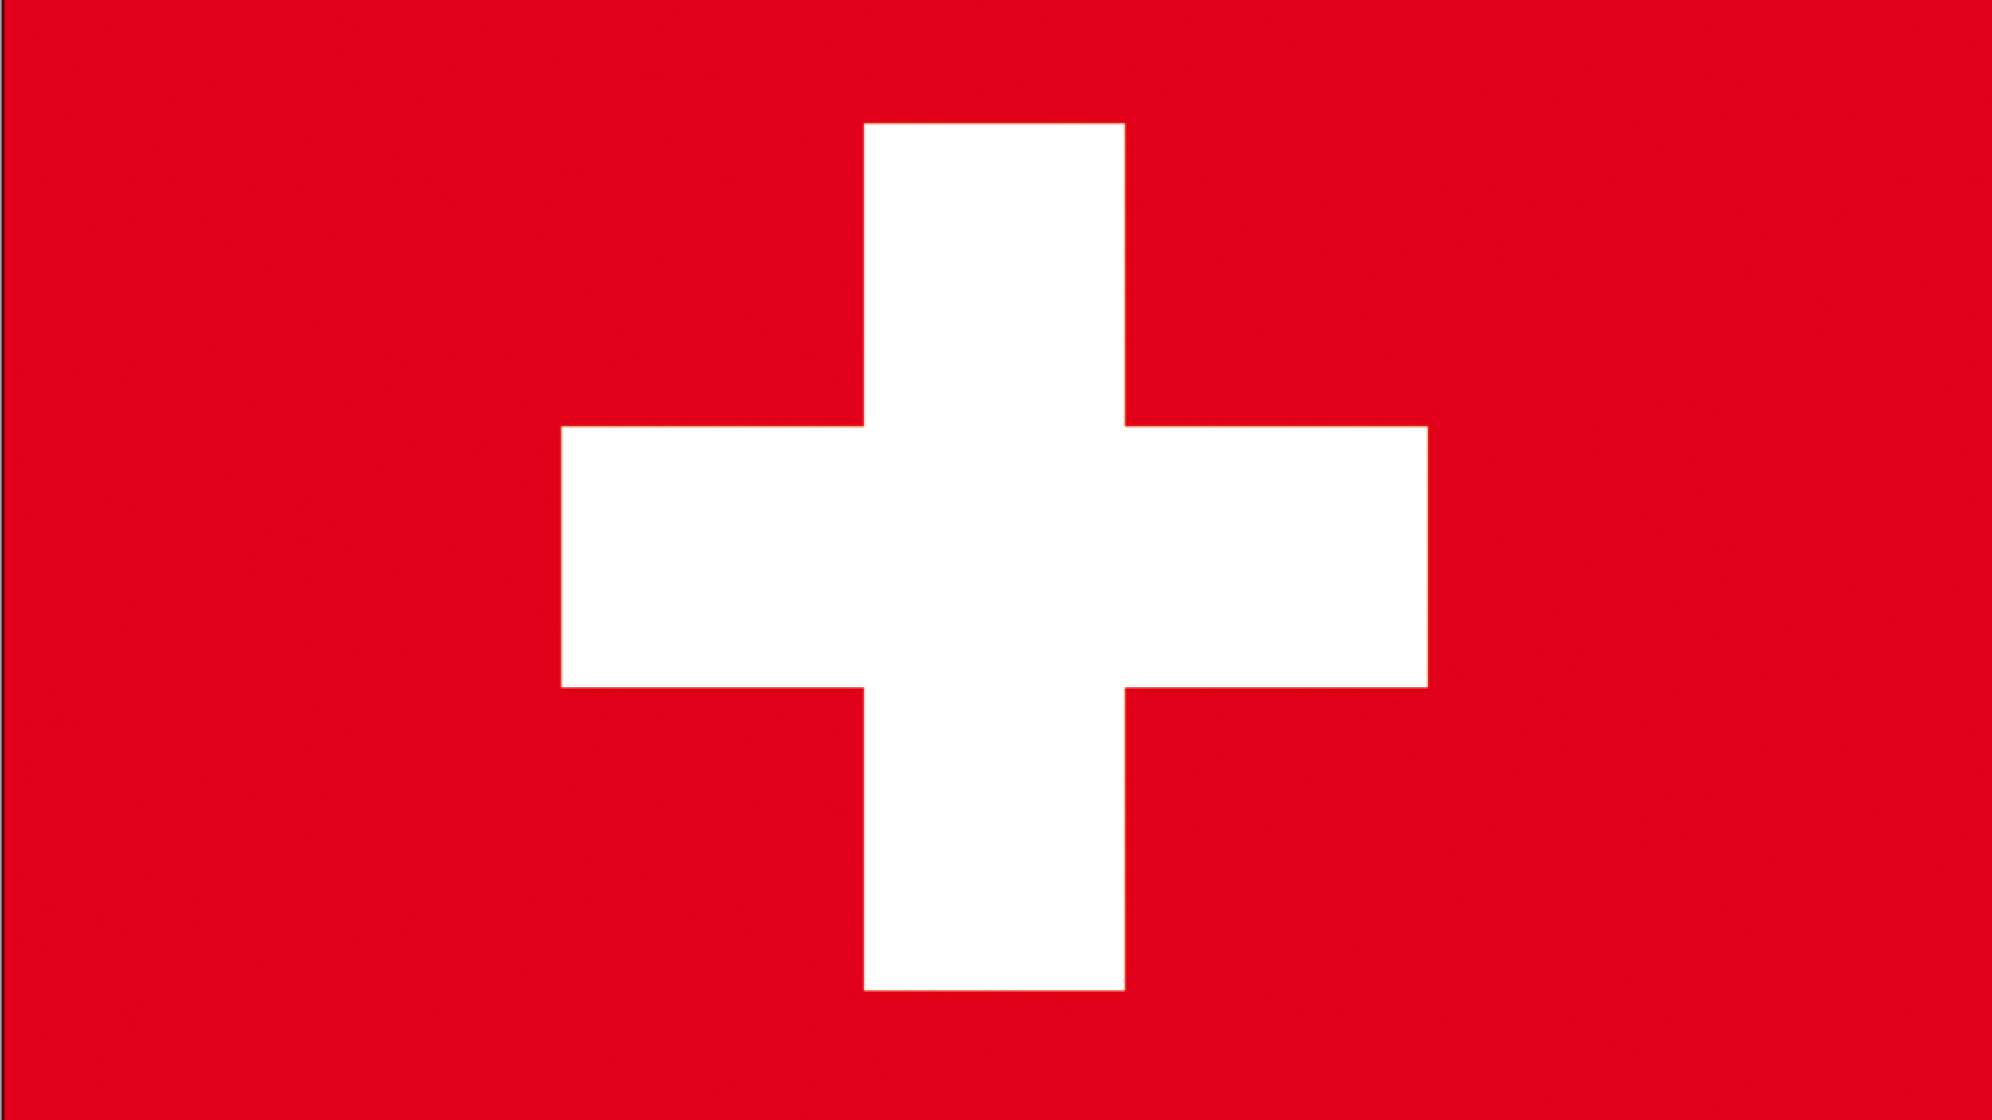 Verkehrsregel-Quiz für die Schweiz: Testet euer Wissen!